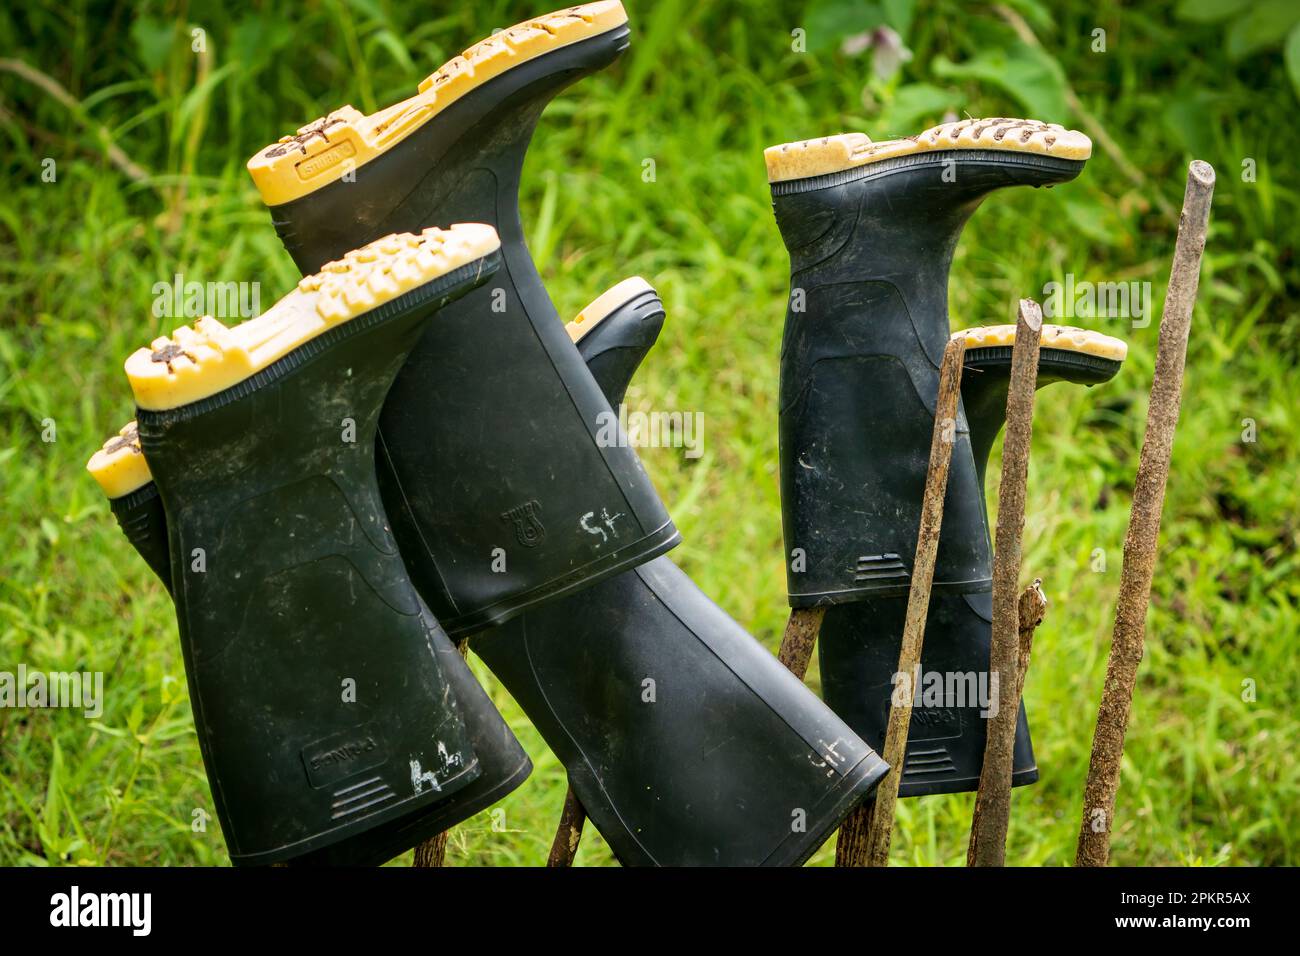 Les bottes de gommbots sont laissées au sec après une matinée d'exploration de l'Amazonie péruvienne. Ces équipements sont considérés comme essentiels. Banque D'Images